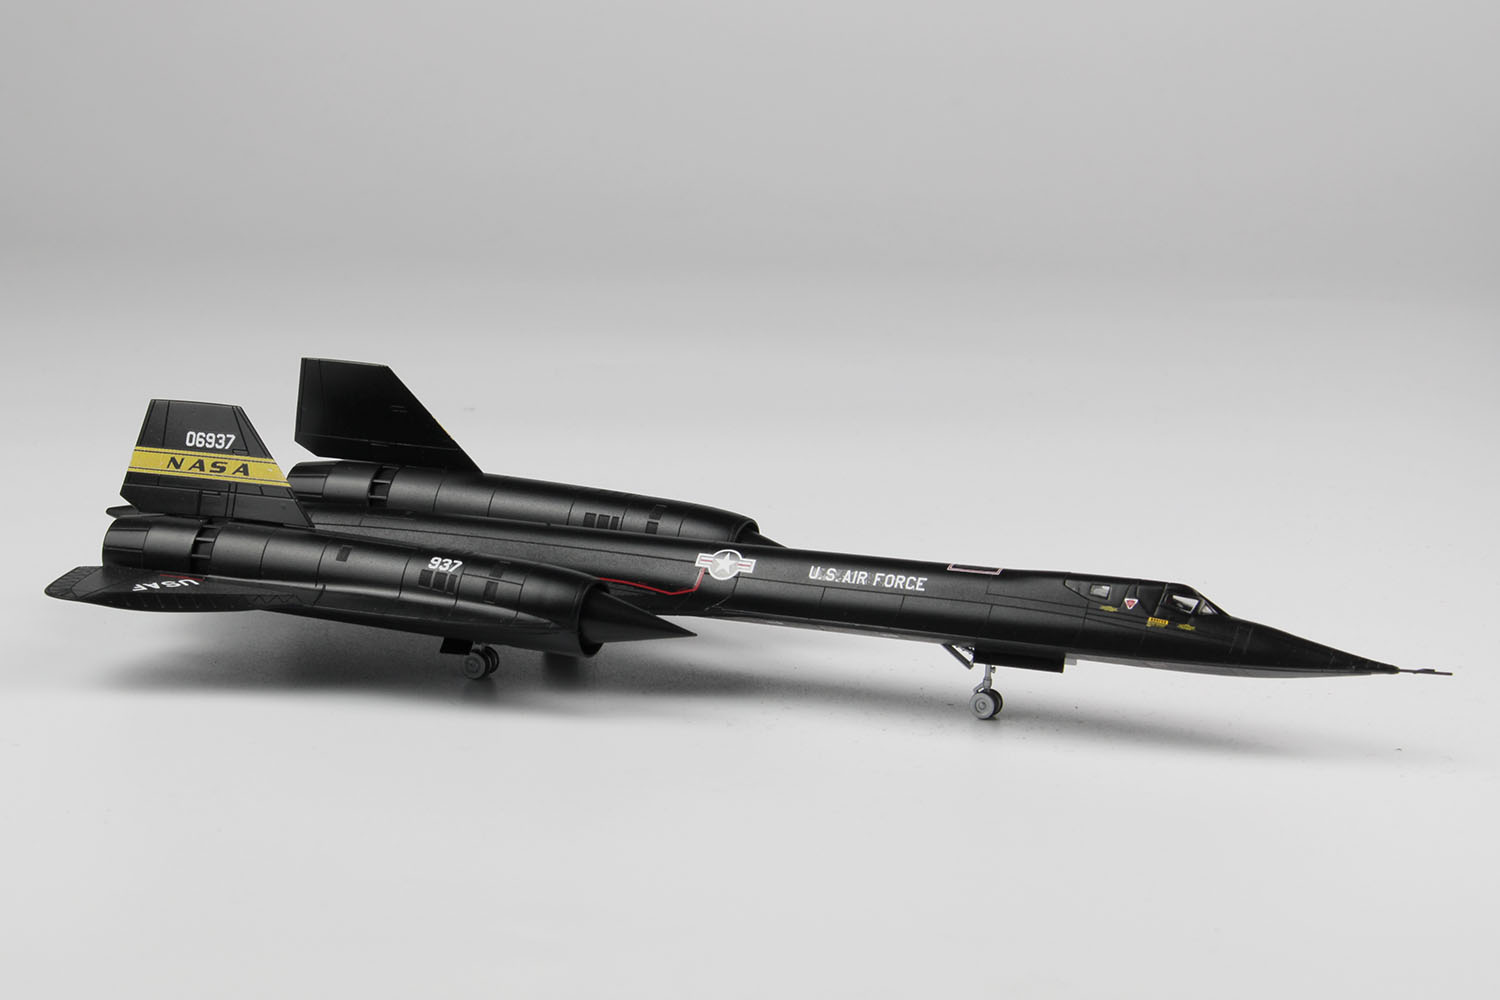 1/144 アメリカ空軍 高高度戦略偵察機 SR-71 ブラックバード 'NASA'